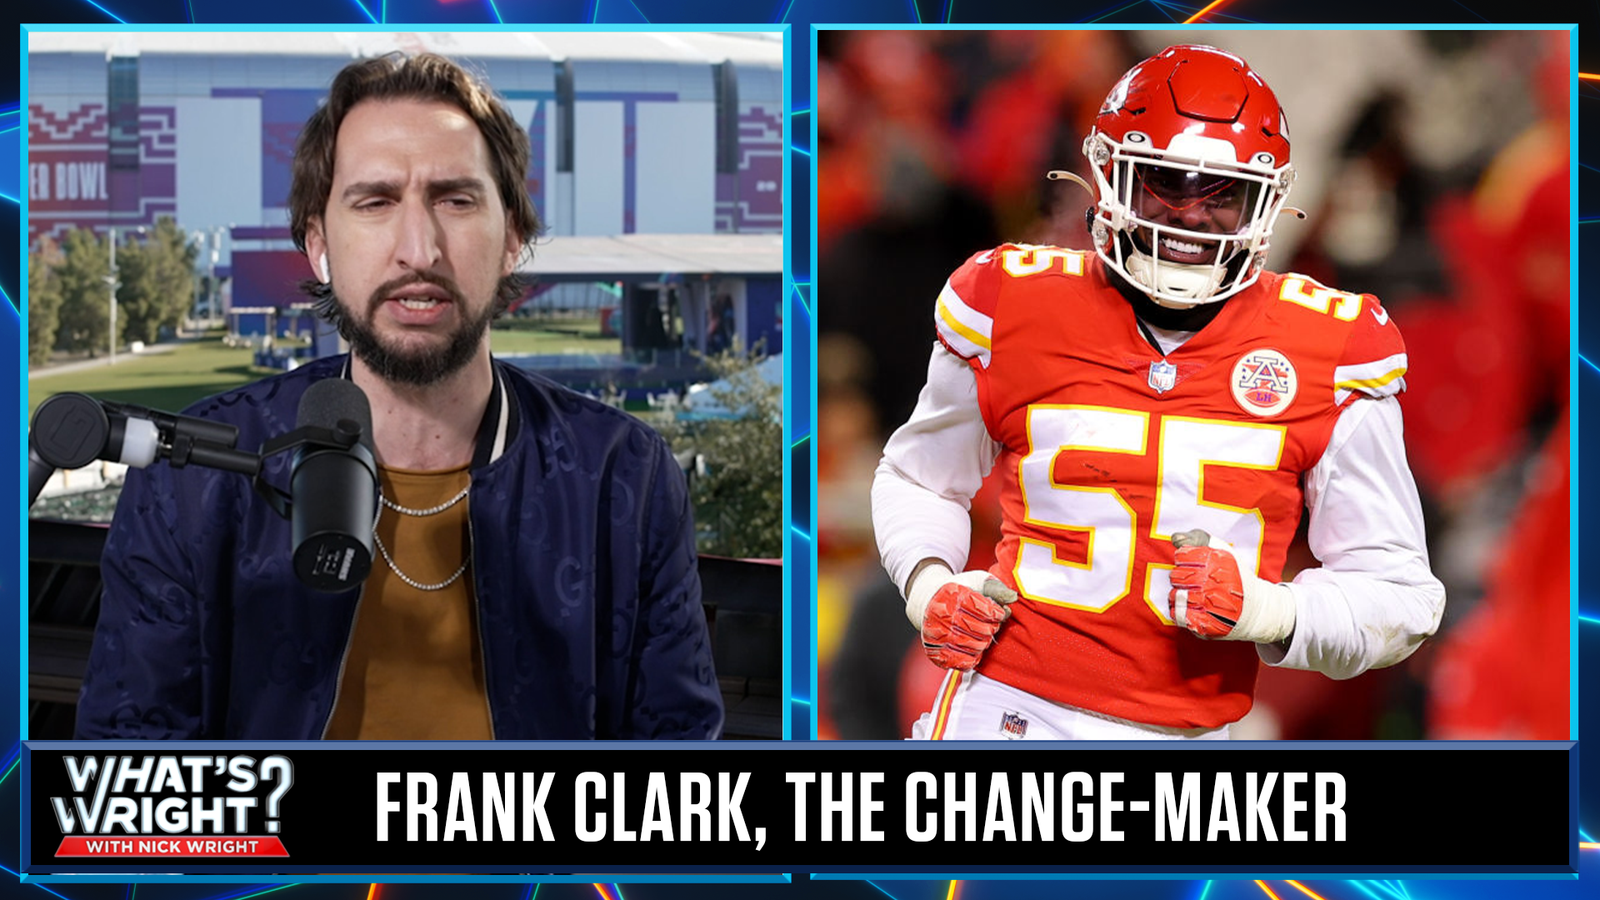 Frank Clark the "change-maker" of Super Bowl